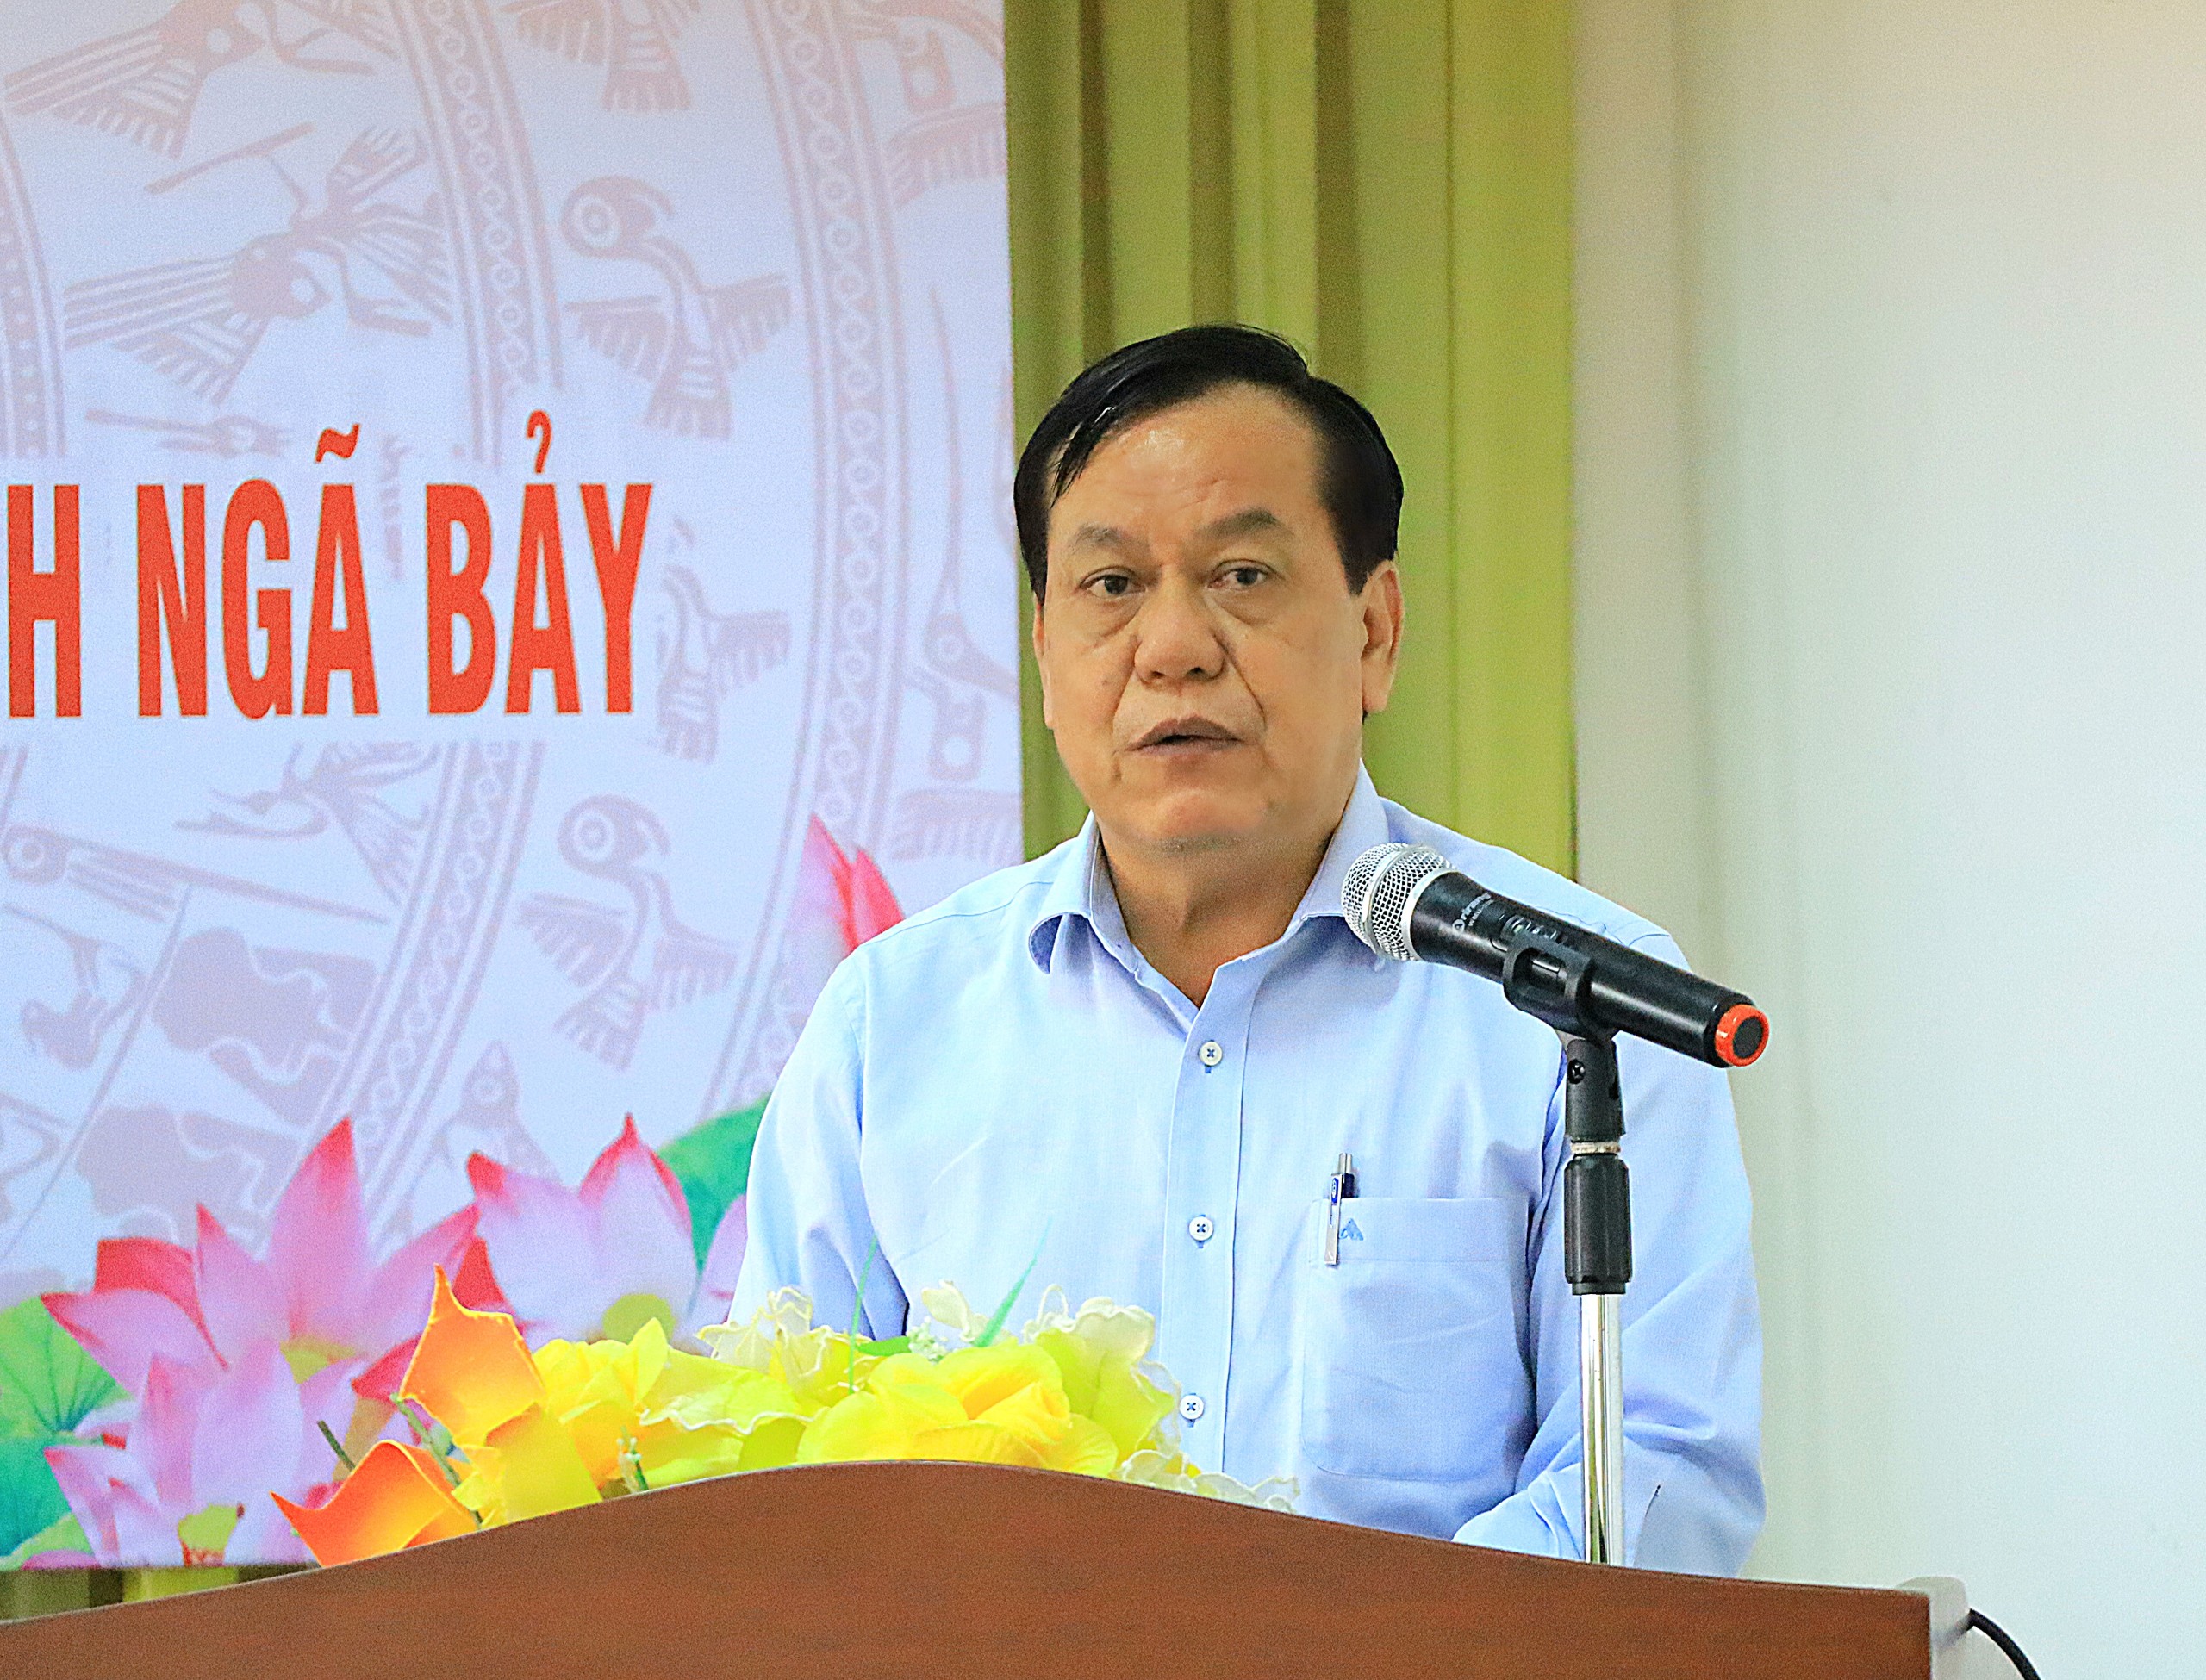 Ông Nguyễn Huỳnh Đức - Bí thư Thành ủy Ngã Bảy, tỉnh Hậu Giang phát biểu tại buổi tọa đàm.